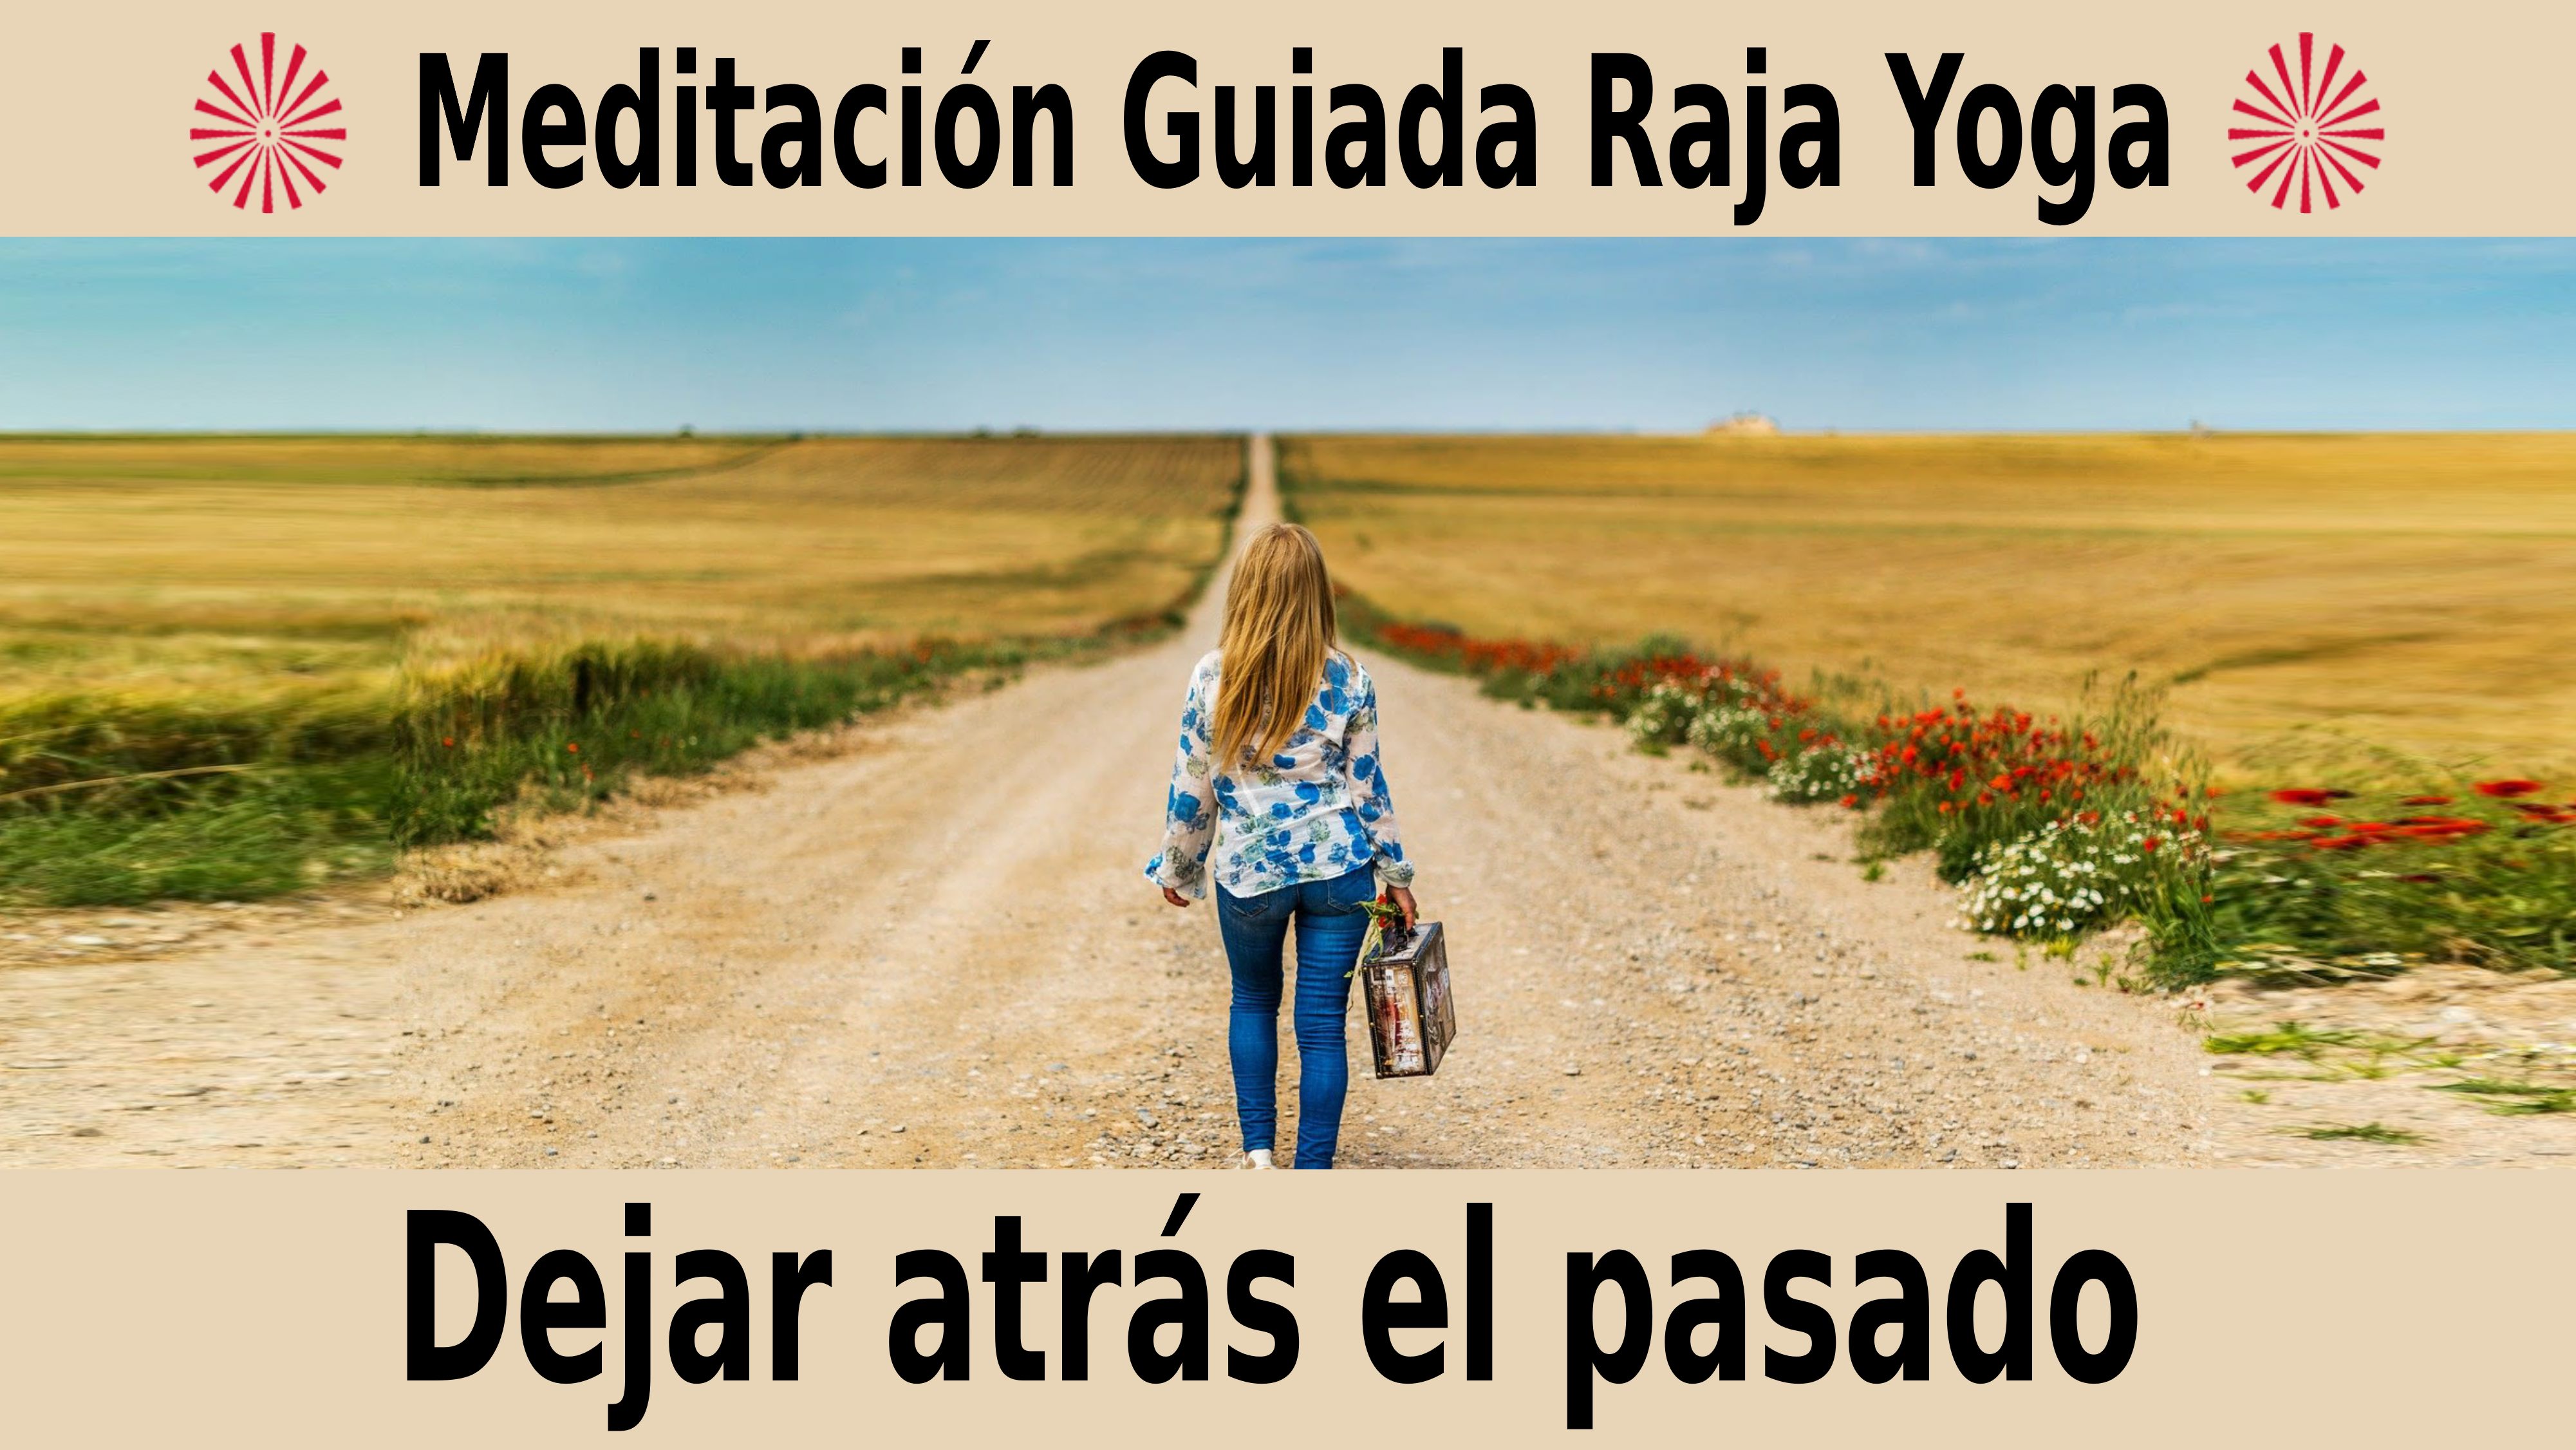 Meditación Raja Yoga: Dejar atrás el pasado (3 Noviembre 2020) On-line desde Canarias